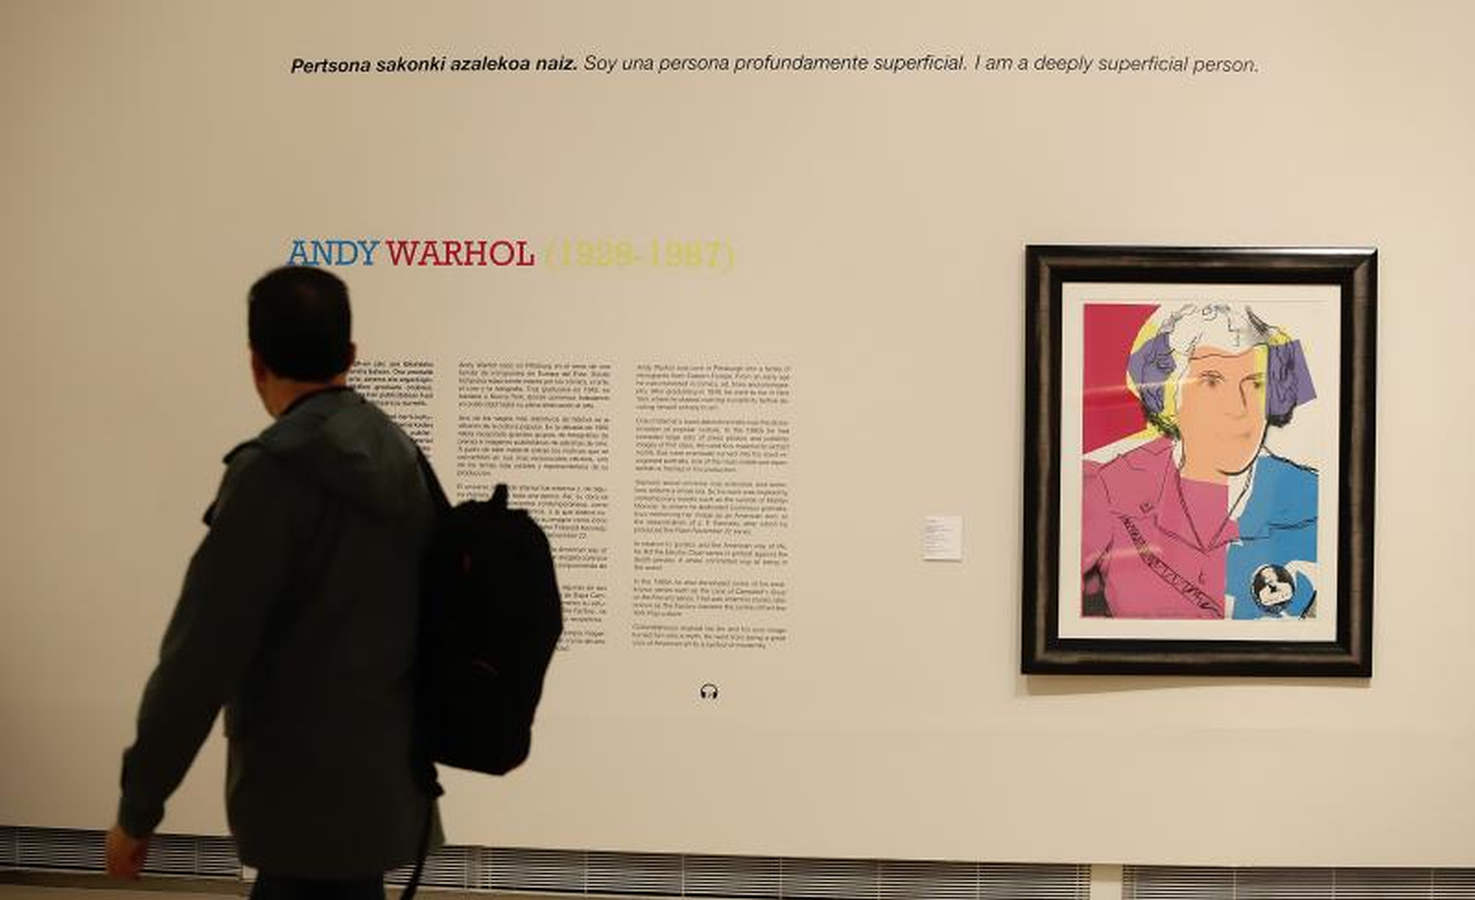 El colorido del pop americano recala este verano en San Sebastián en una exposición en la Sala Kubo con un centenar de piezas de Andy Warhol, Robert Rauschenberg, Roy Litchtenstein, Keith Haring y Robert Indiana que reflejan el espíritu de un movimiento que elevó los objetos cotidianos a la categoría de arte.